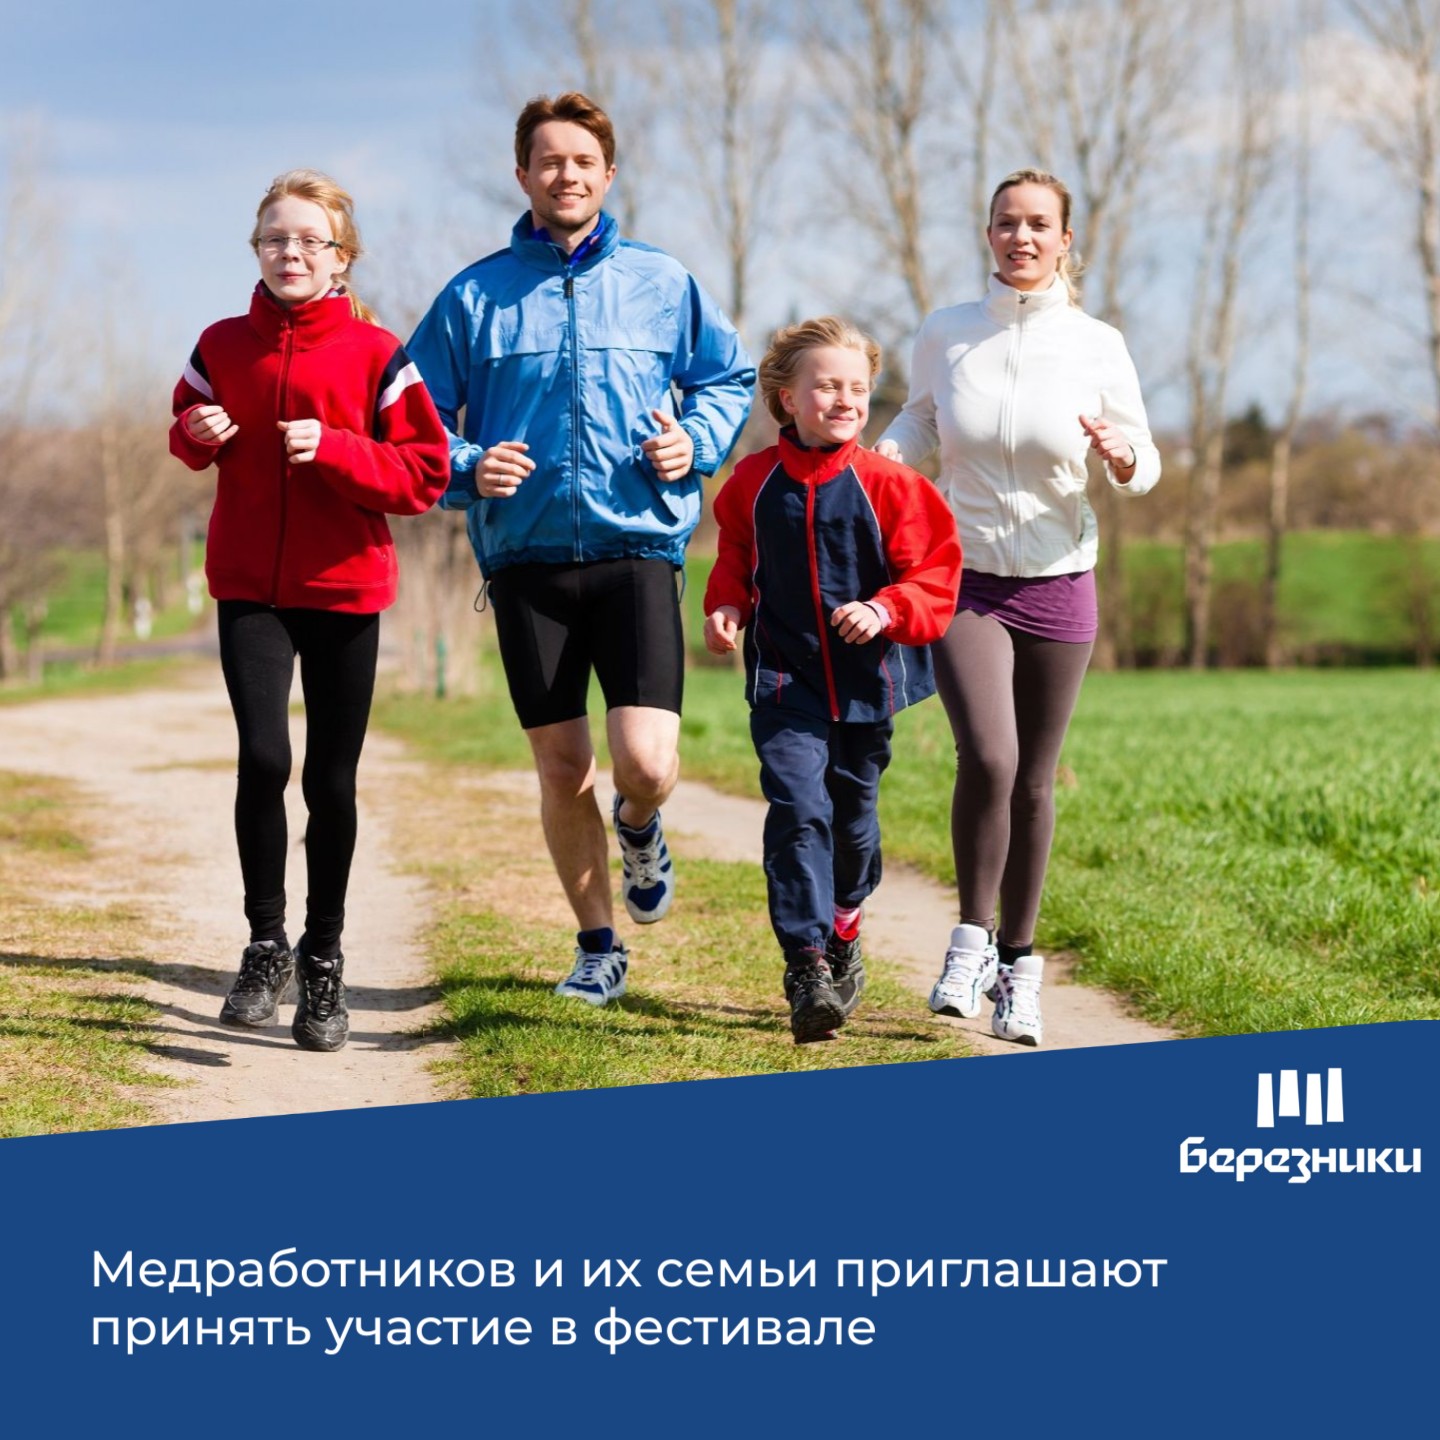 Приглашаем березниковских медработников и их семьи принять участие во Всероссийском спортивном фестивале «Здоровая семья – сильная Россия!»